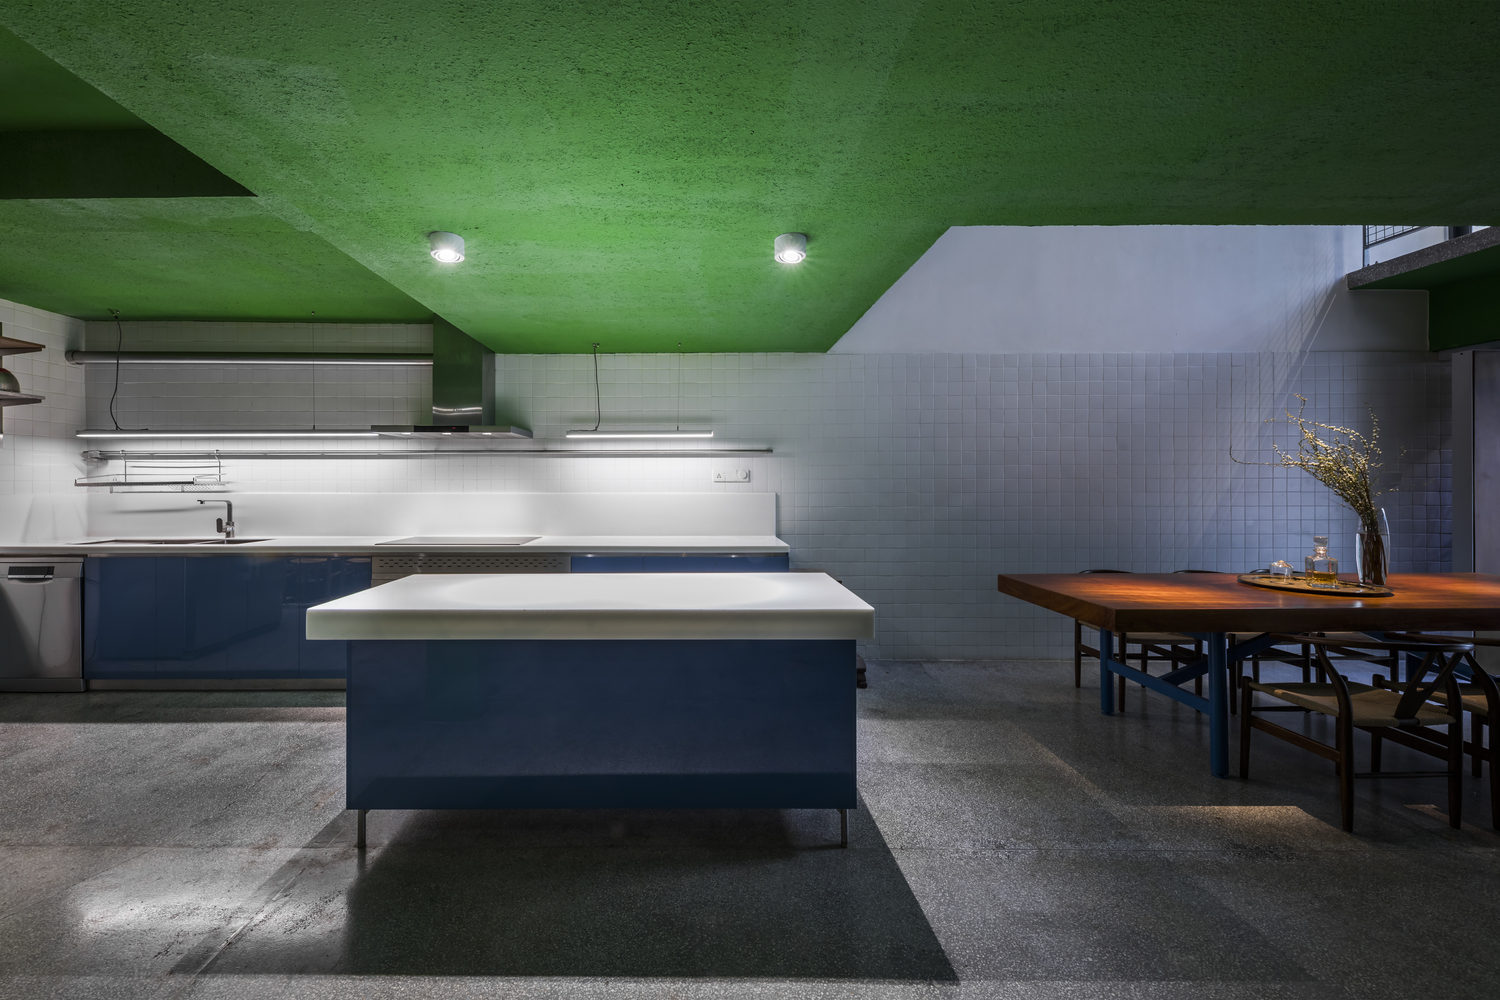 Không gian phòng bếp và đảo bếp sử dụng gam màu màu xanh lam đậm kết hợp với sắc trắng để tôn lên vẻ nổi bật của trần sơn màu xanh lá.